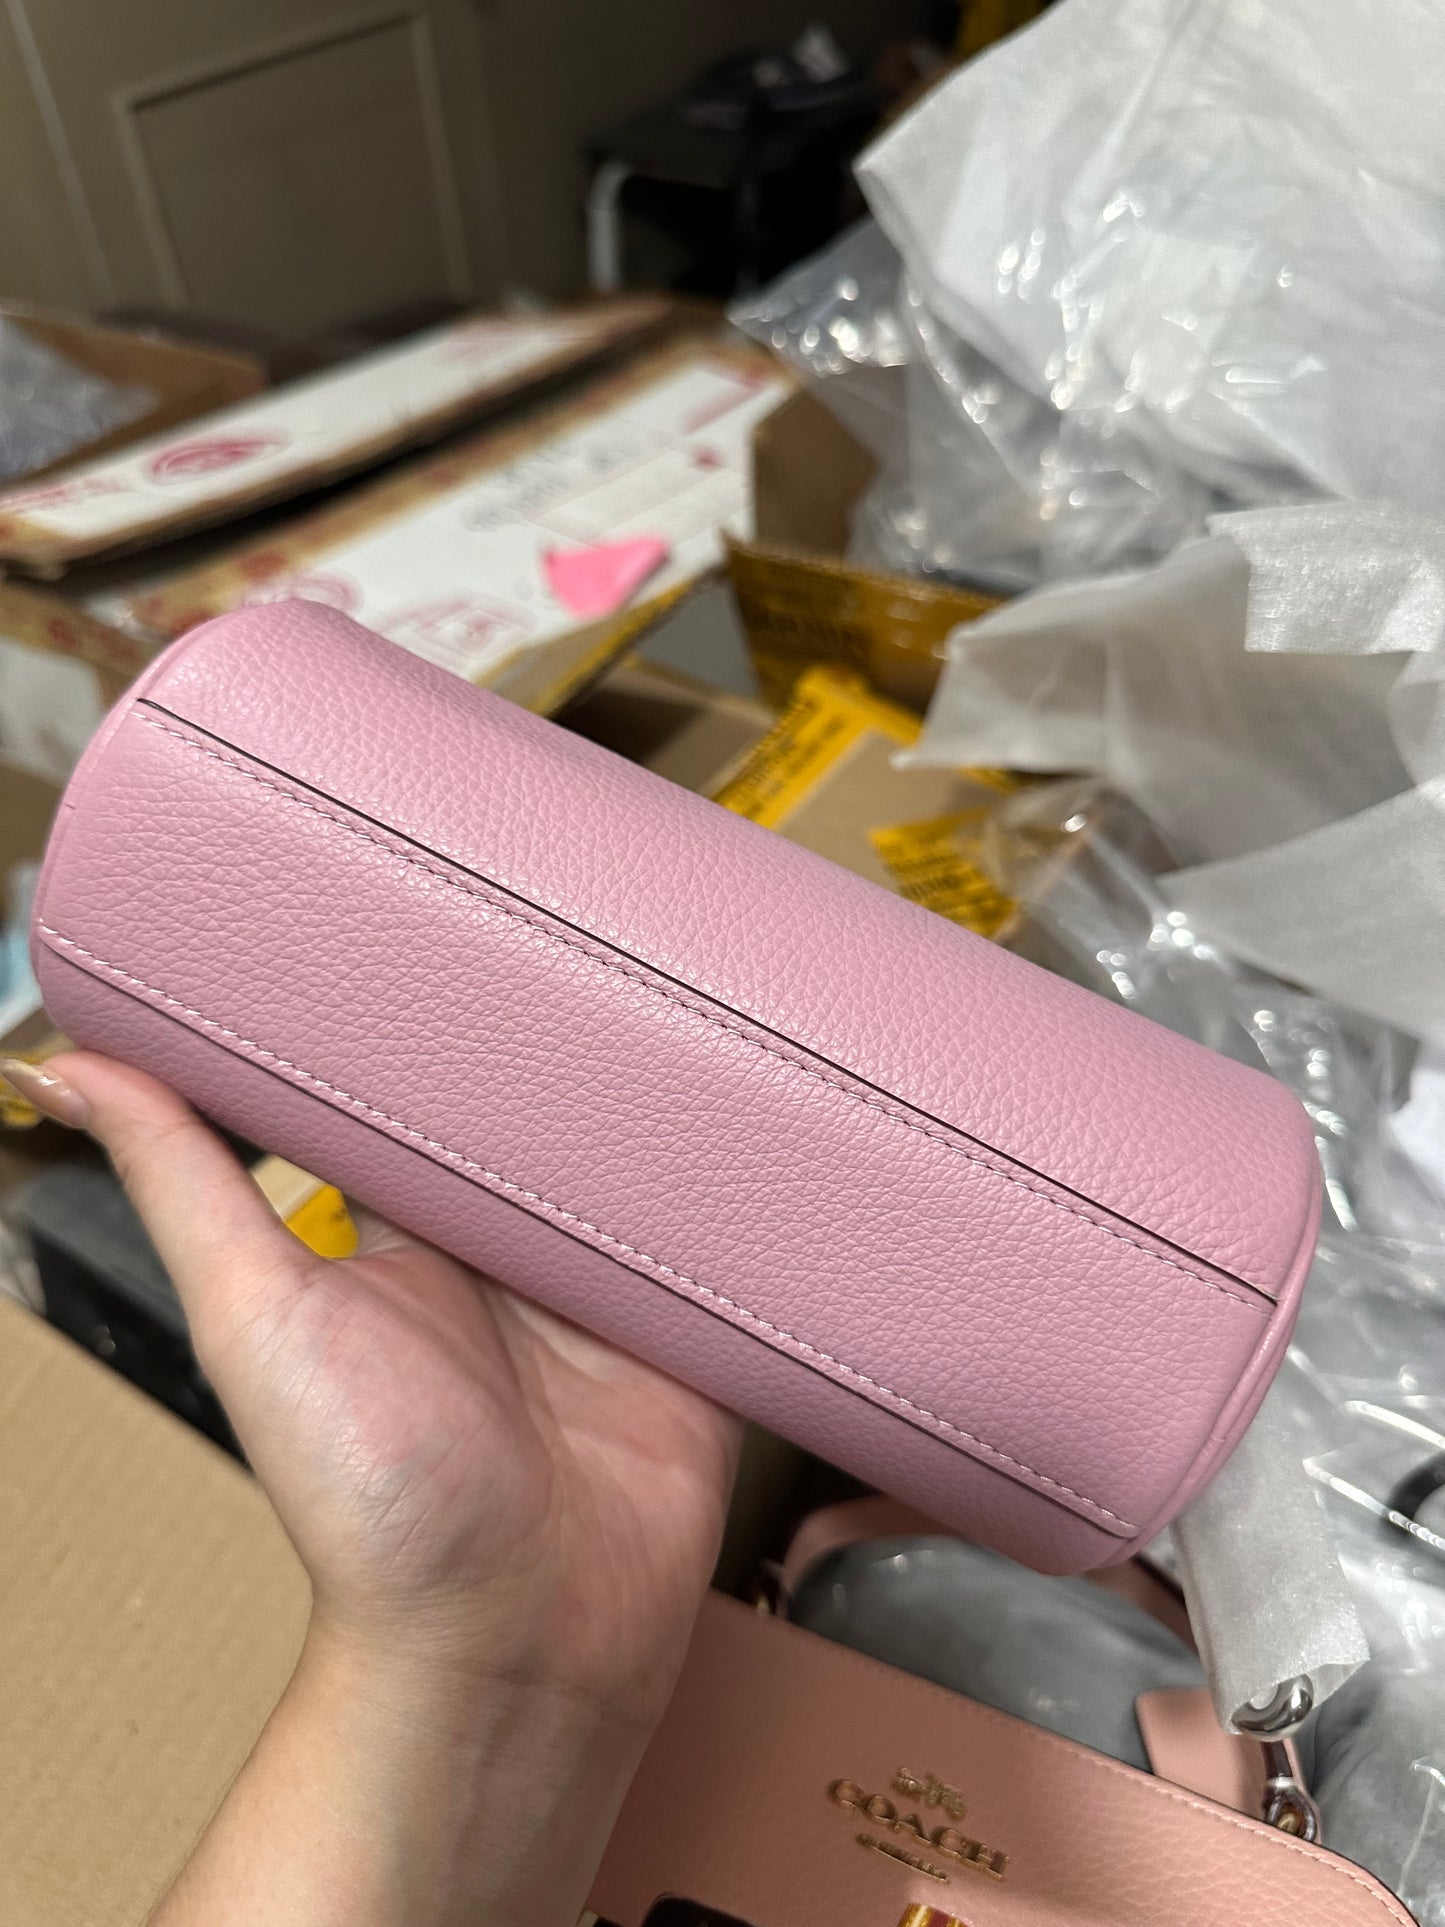 AUTHENTIC/ORIGINAL COACH Nolita Barrel Small Bag Pink Wristlet